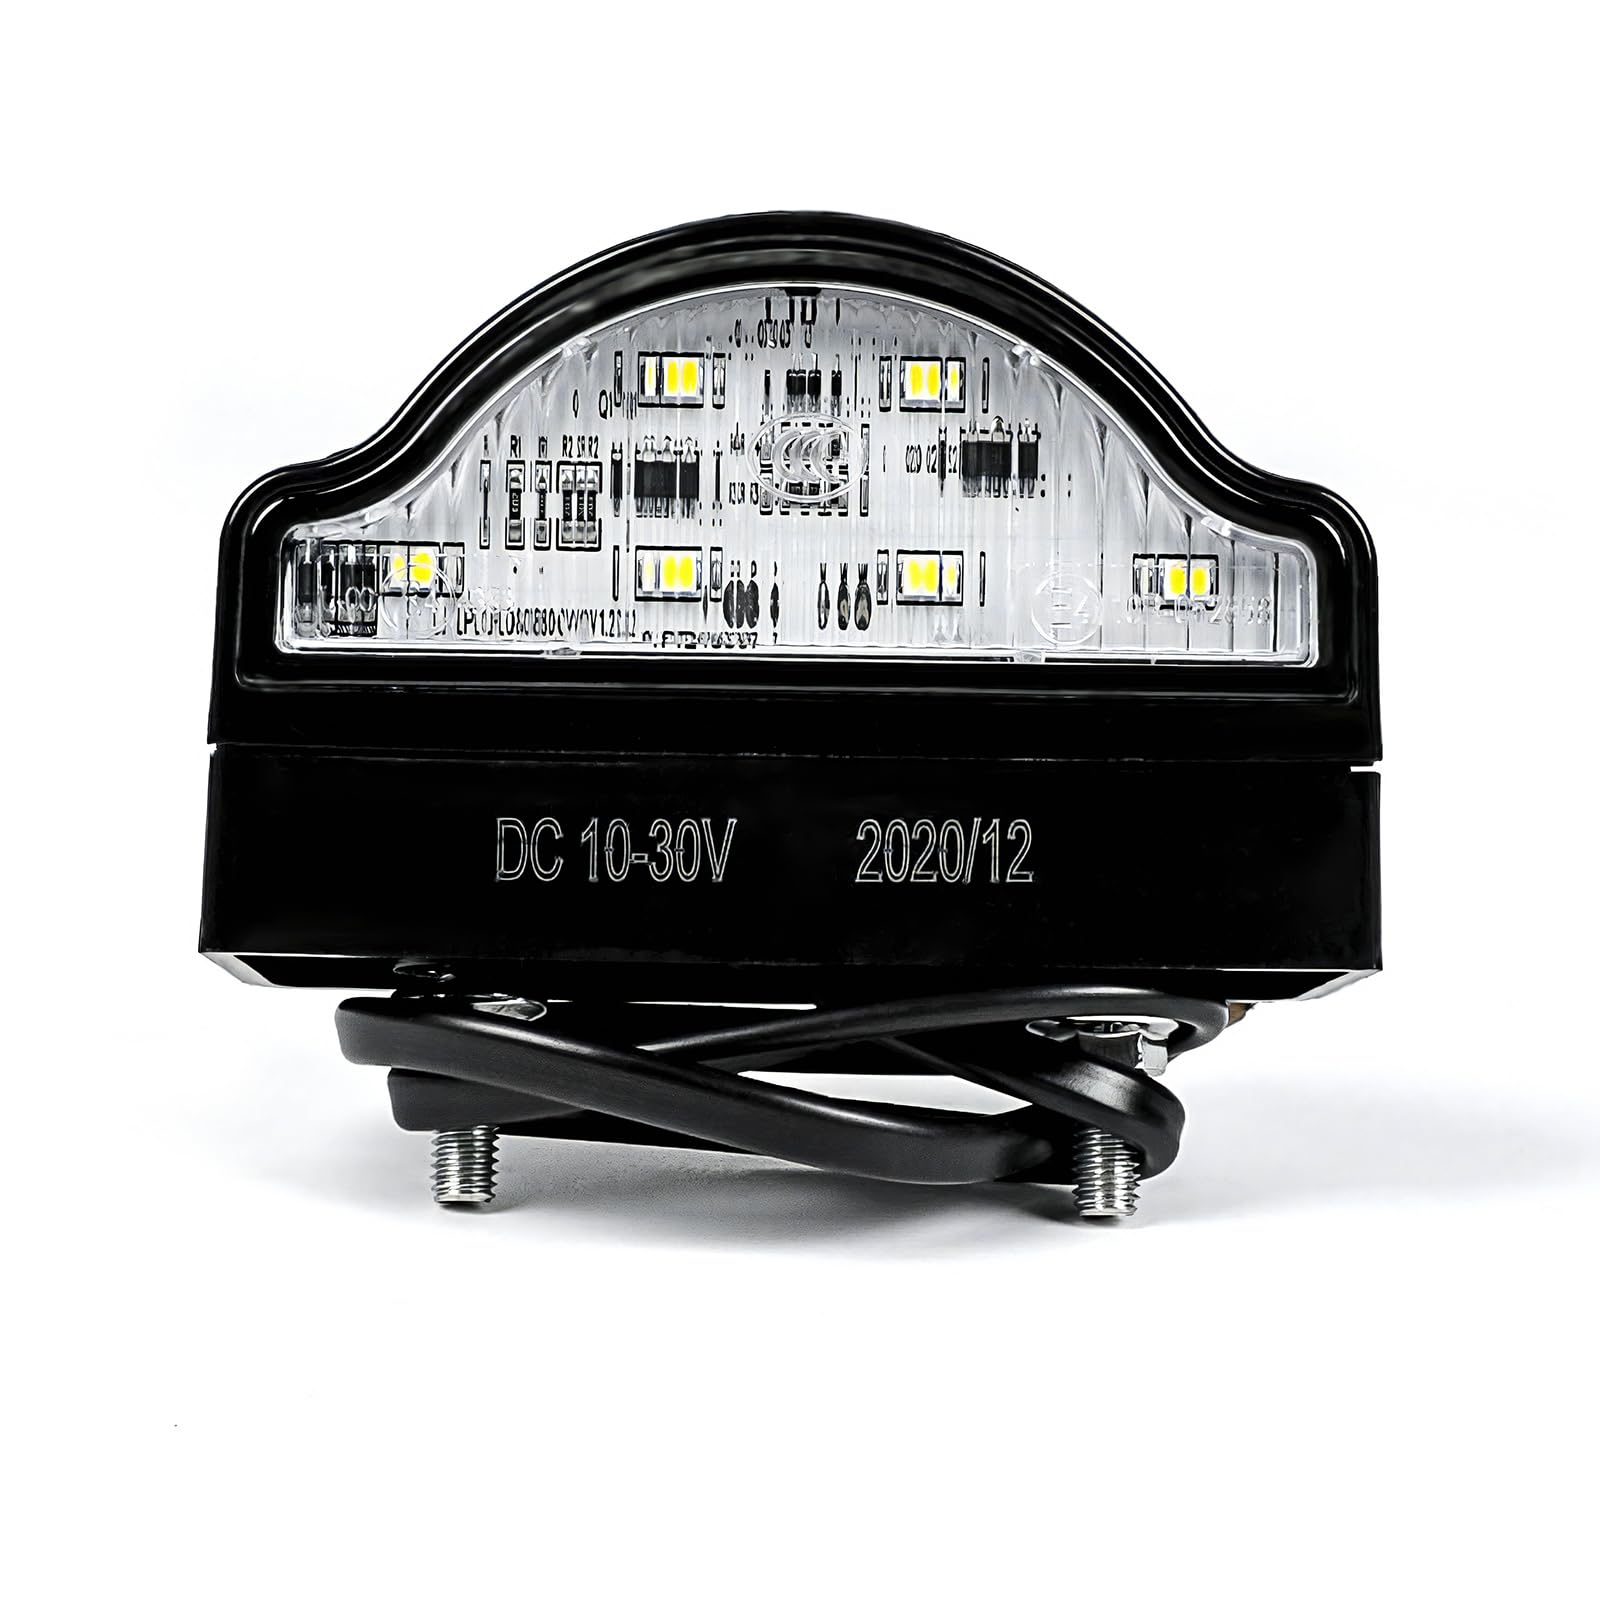 Yinaolan 1PC LED-Nummernschildbeleuchtung, 12 V/24 V, wasserdicht, 6 SMD-Auto-Heck-Kennzeichenlampen für Auto, Anhänger, LKW, Wohnwagen, Boot, Fahrzeug oder LKW von Yinaolan